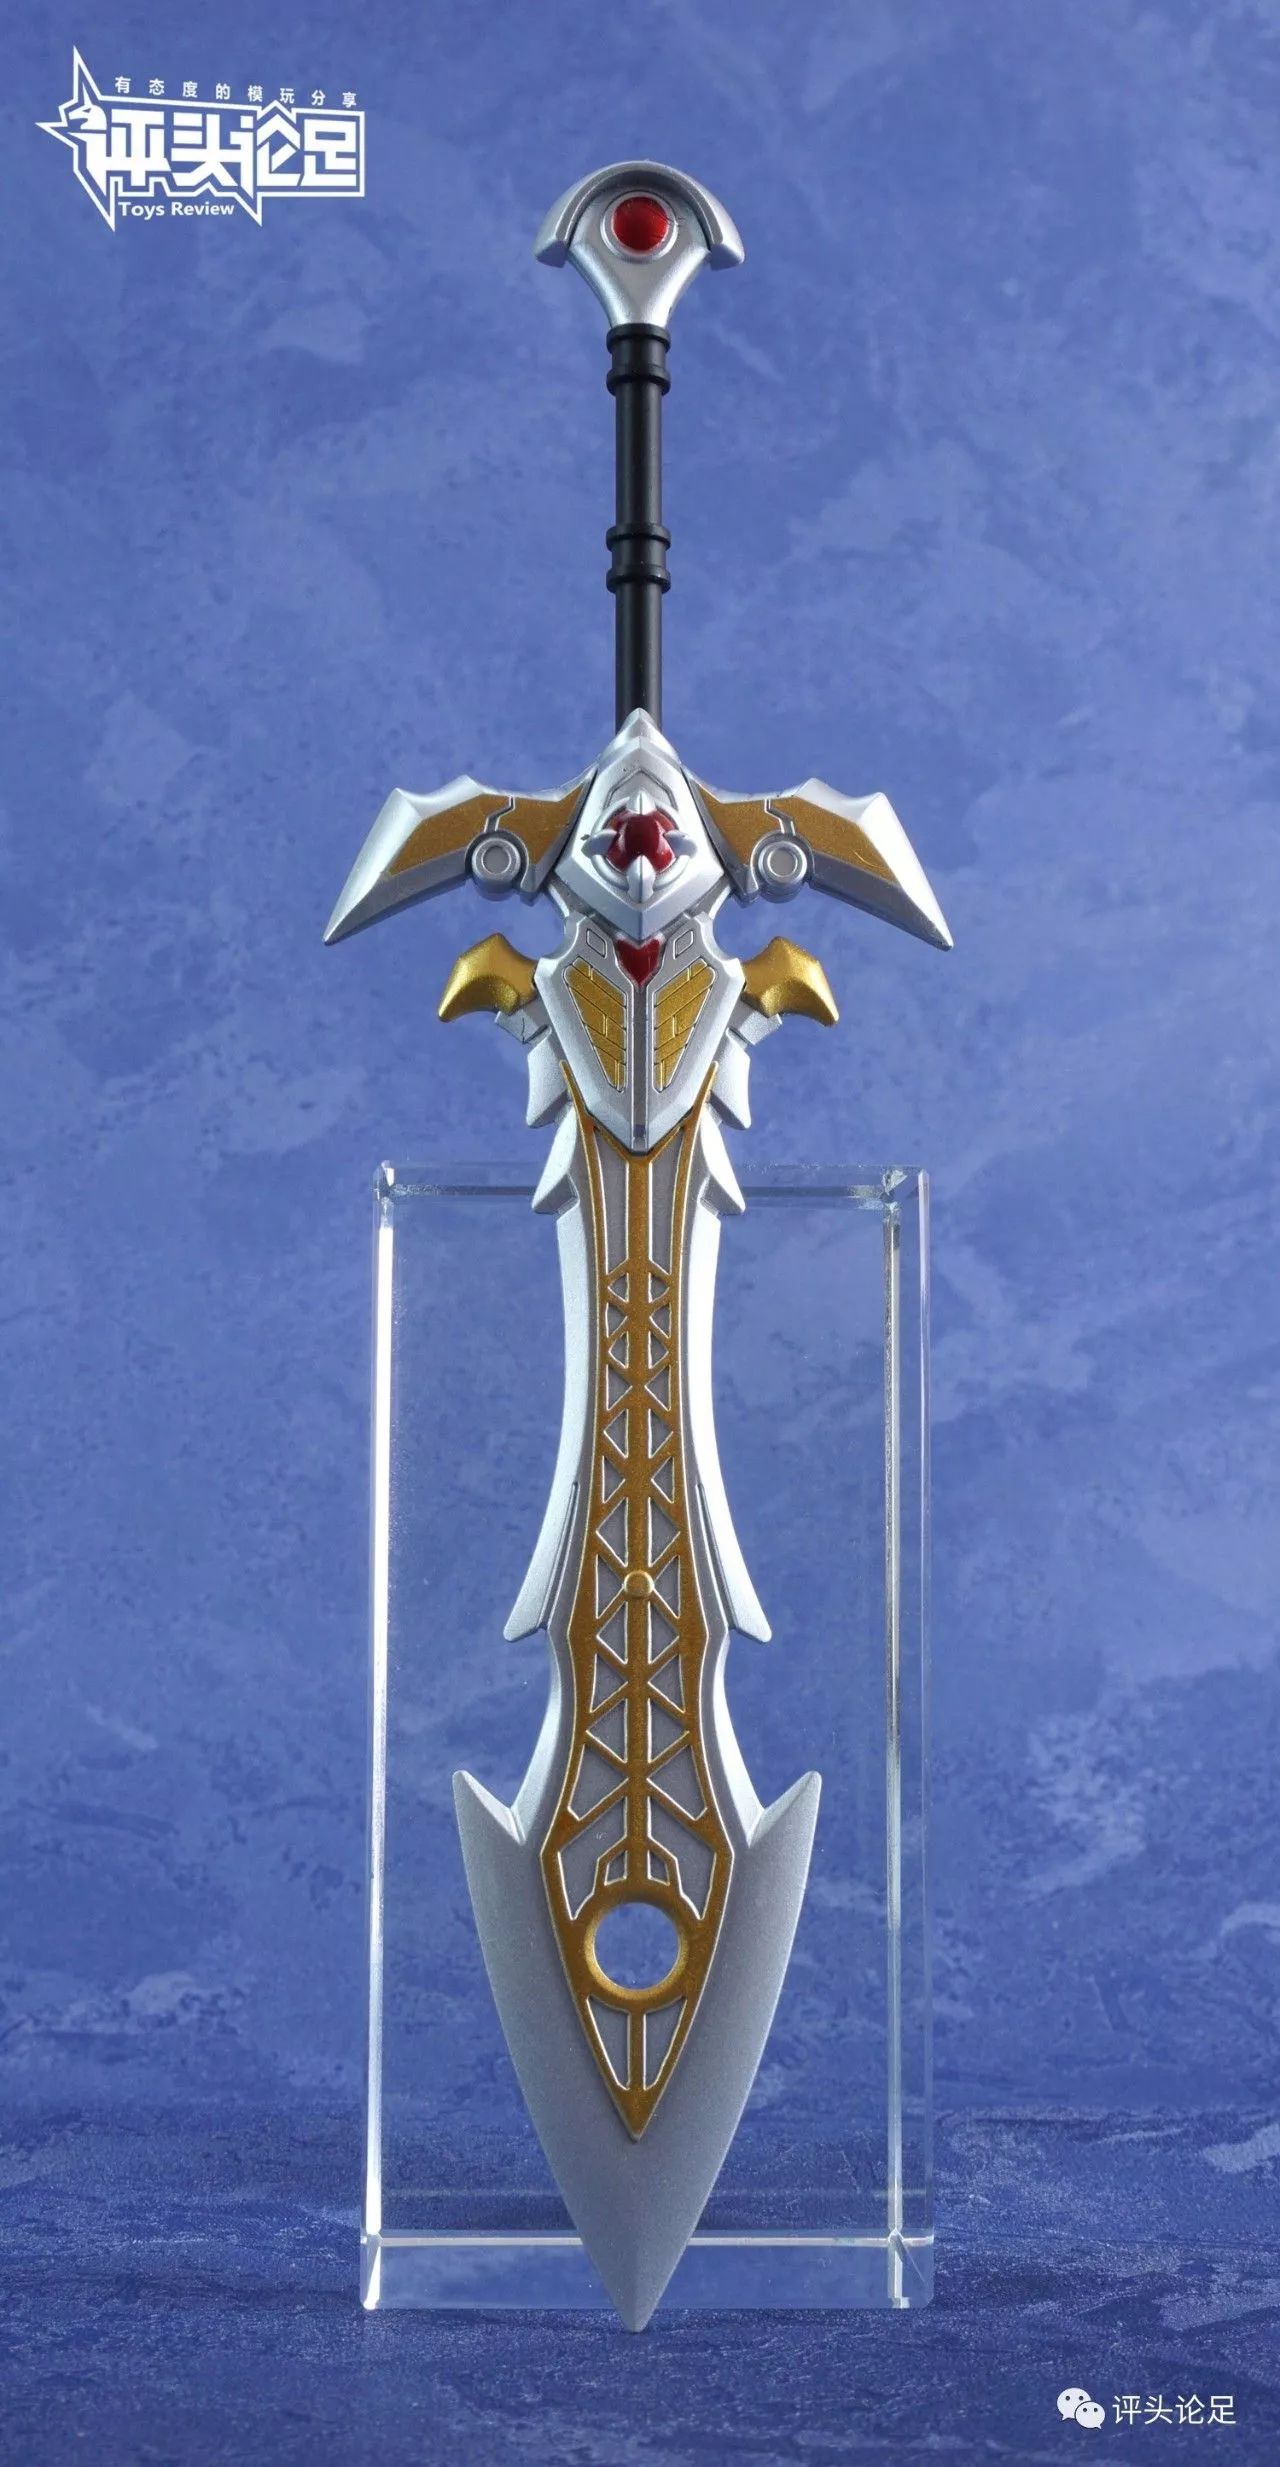 剑的造型还是挺帅气的